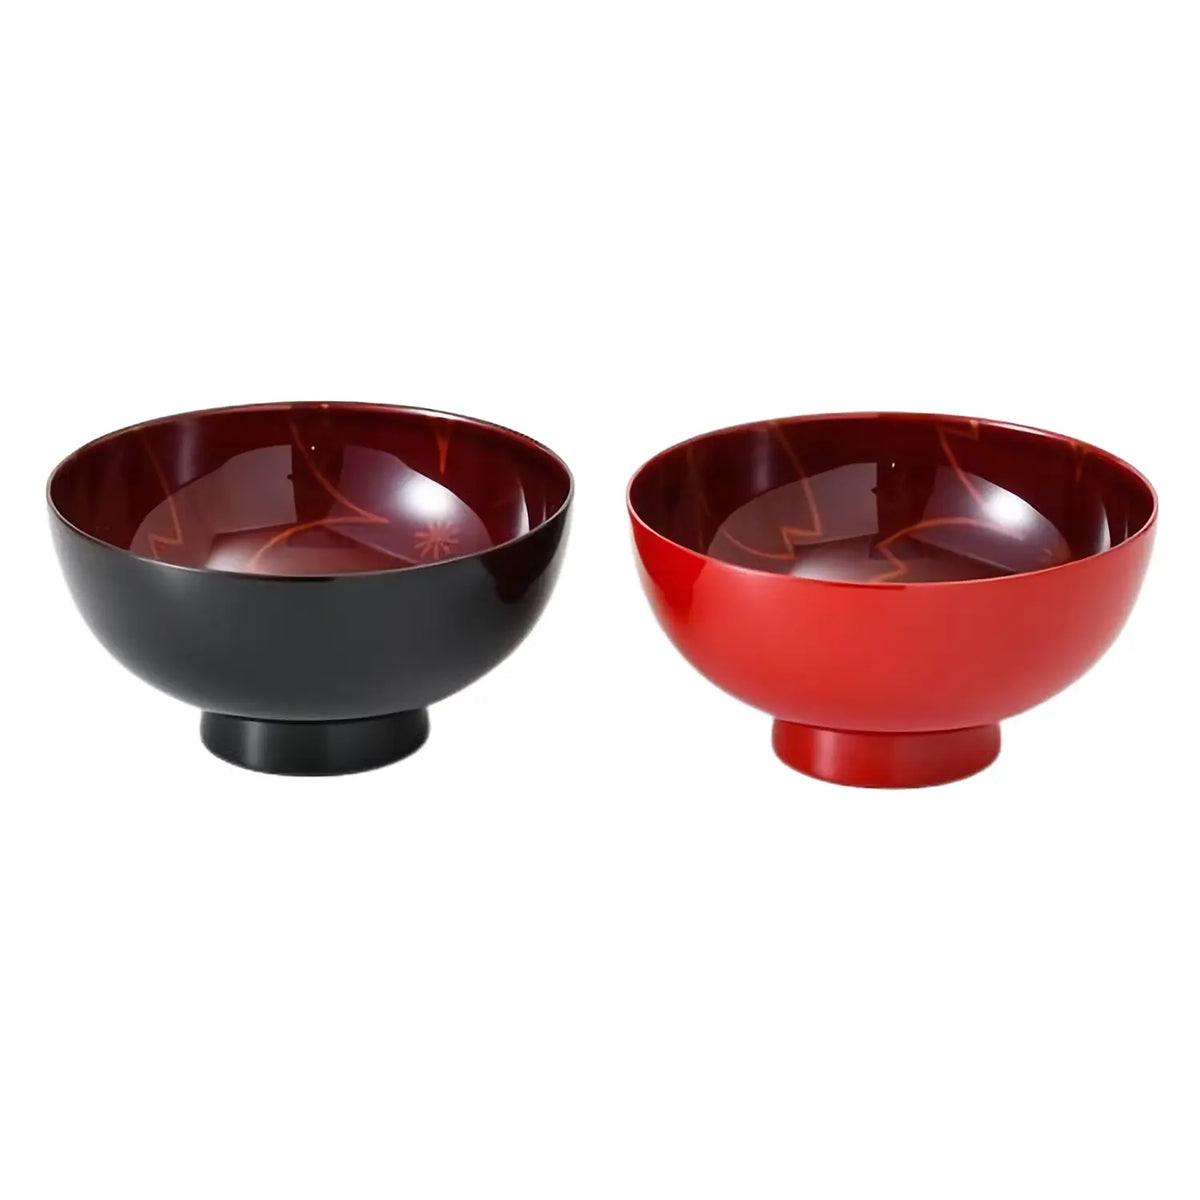 Echizen Shikki Synthetic Resin Couple Bowls Sandalwood